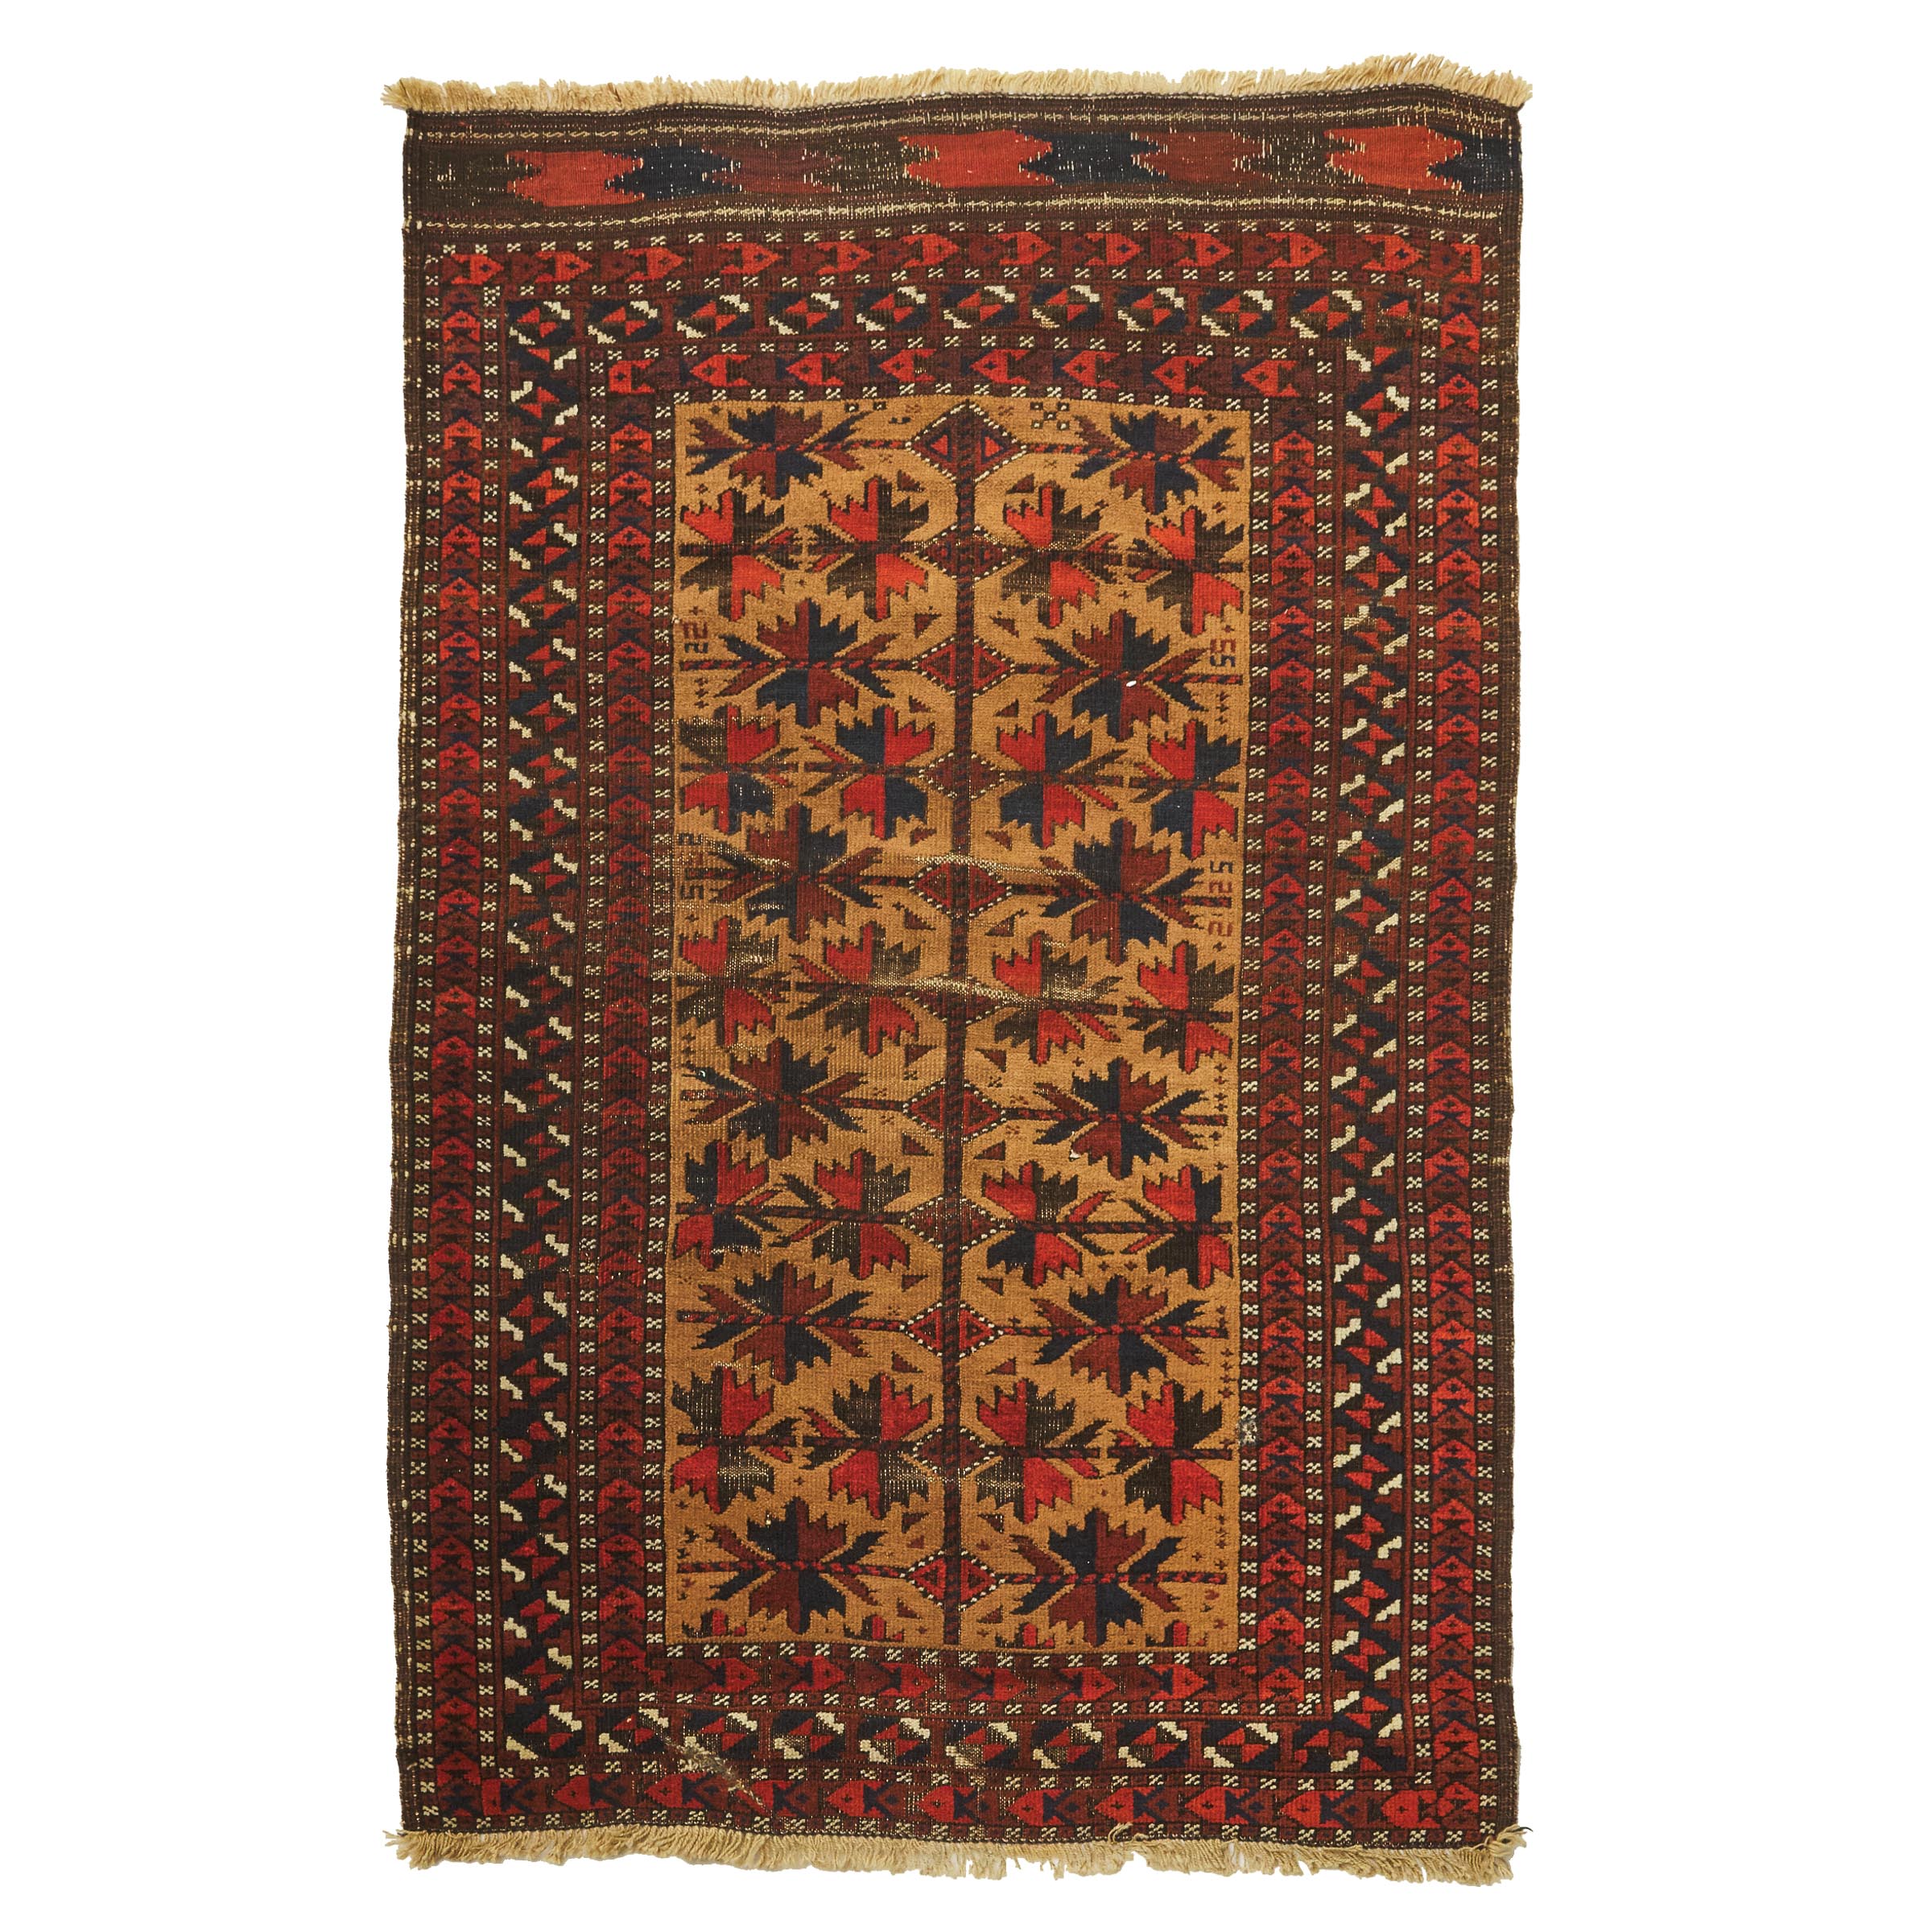 Belouchi Tribal Rug, Persian, c.1880/90